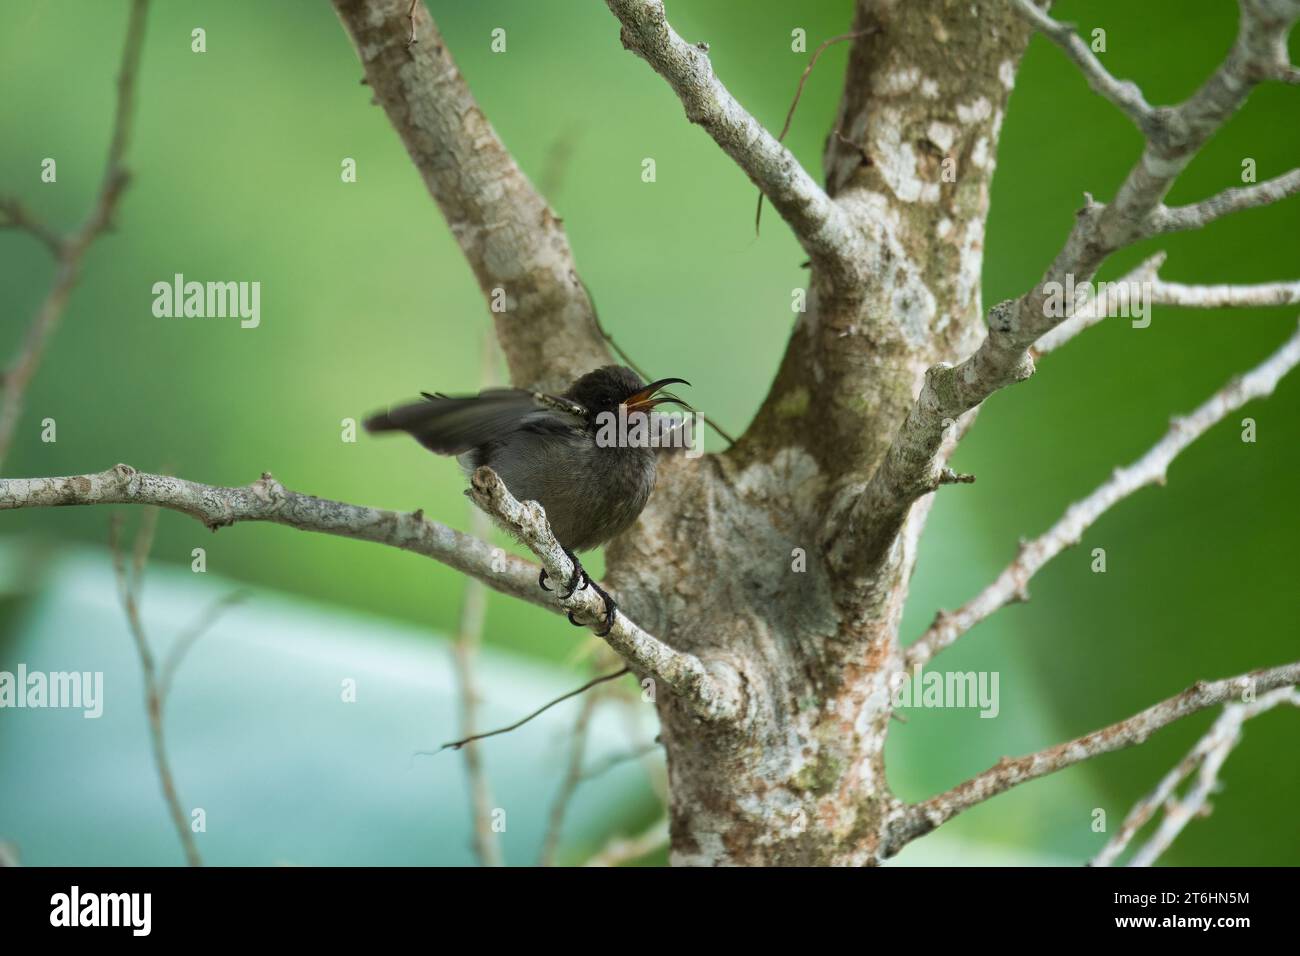 Seychellen sunbird, colibri, kolibri, kolibri auf indischem Lorbeerbaum Zweig, grüner Hintergrund, Mahe Seychellen Stockfoto